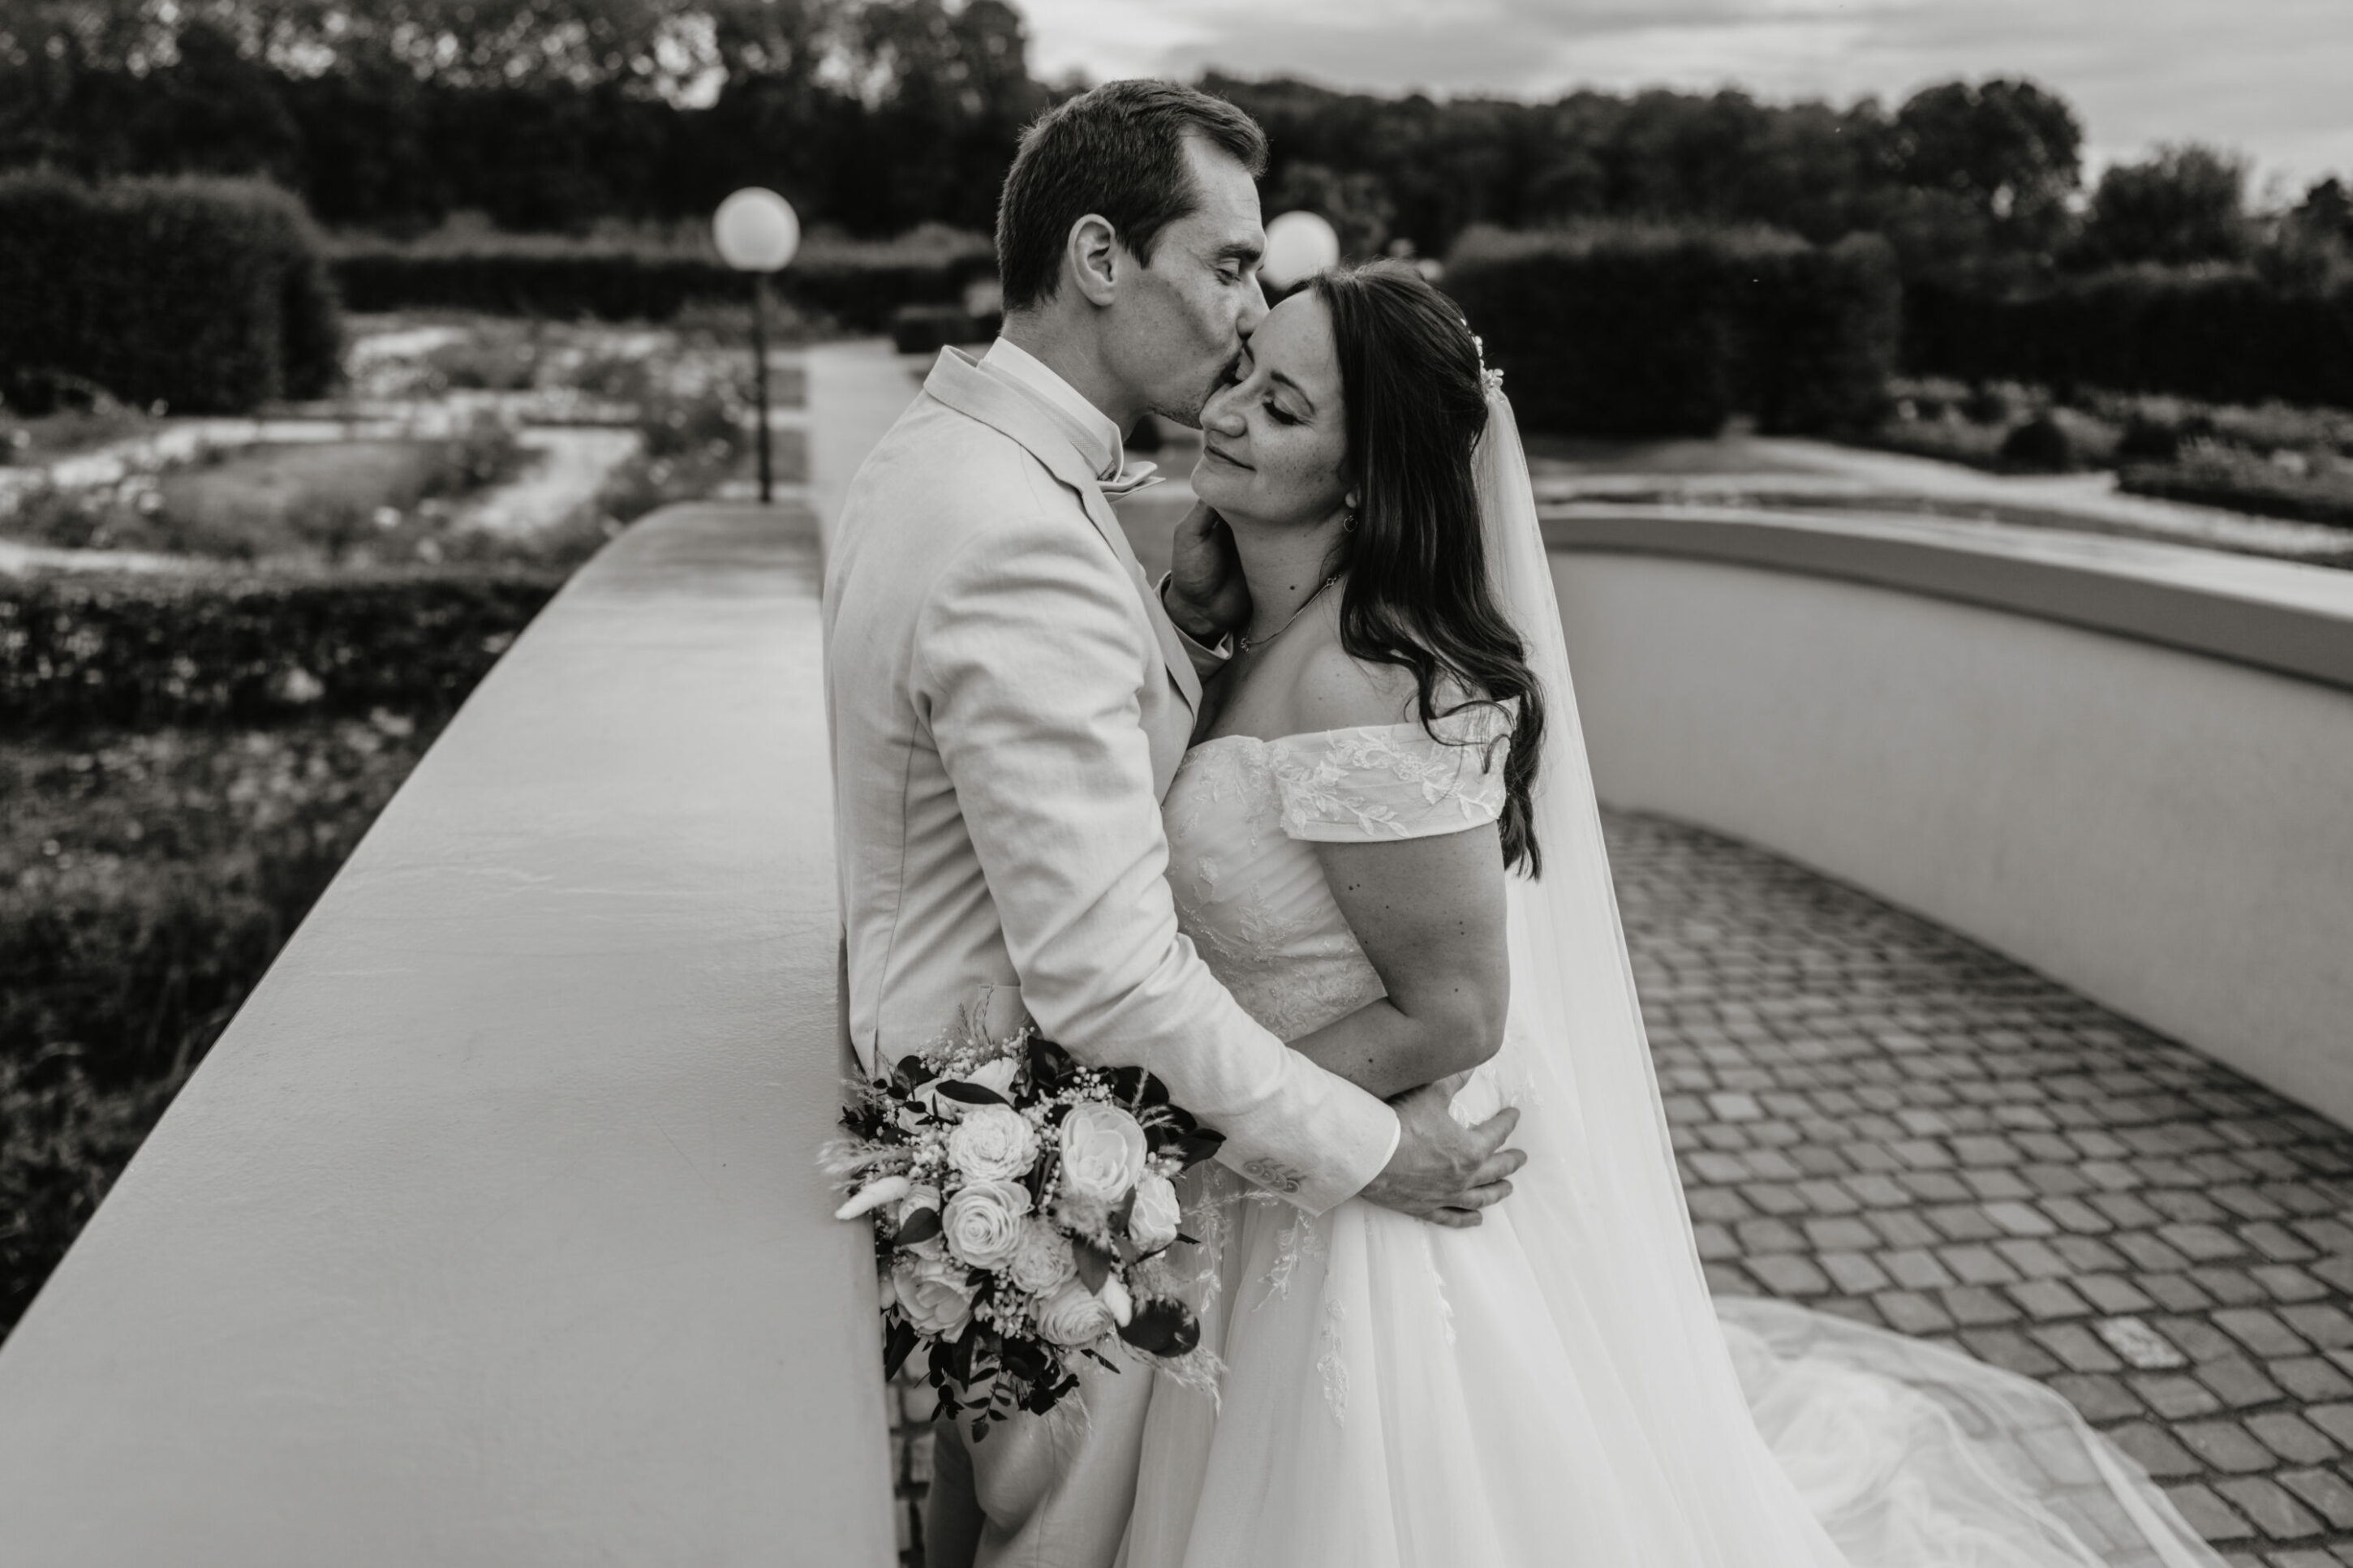 Brautpaar auf Brücke, Bräutigam küsst Braut auf Schläfe, nahe Aufnahme, schwarz-weiß